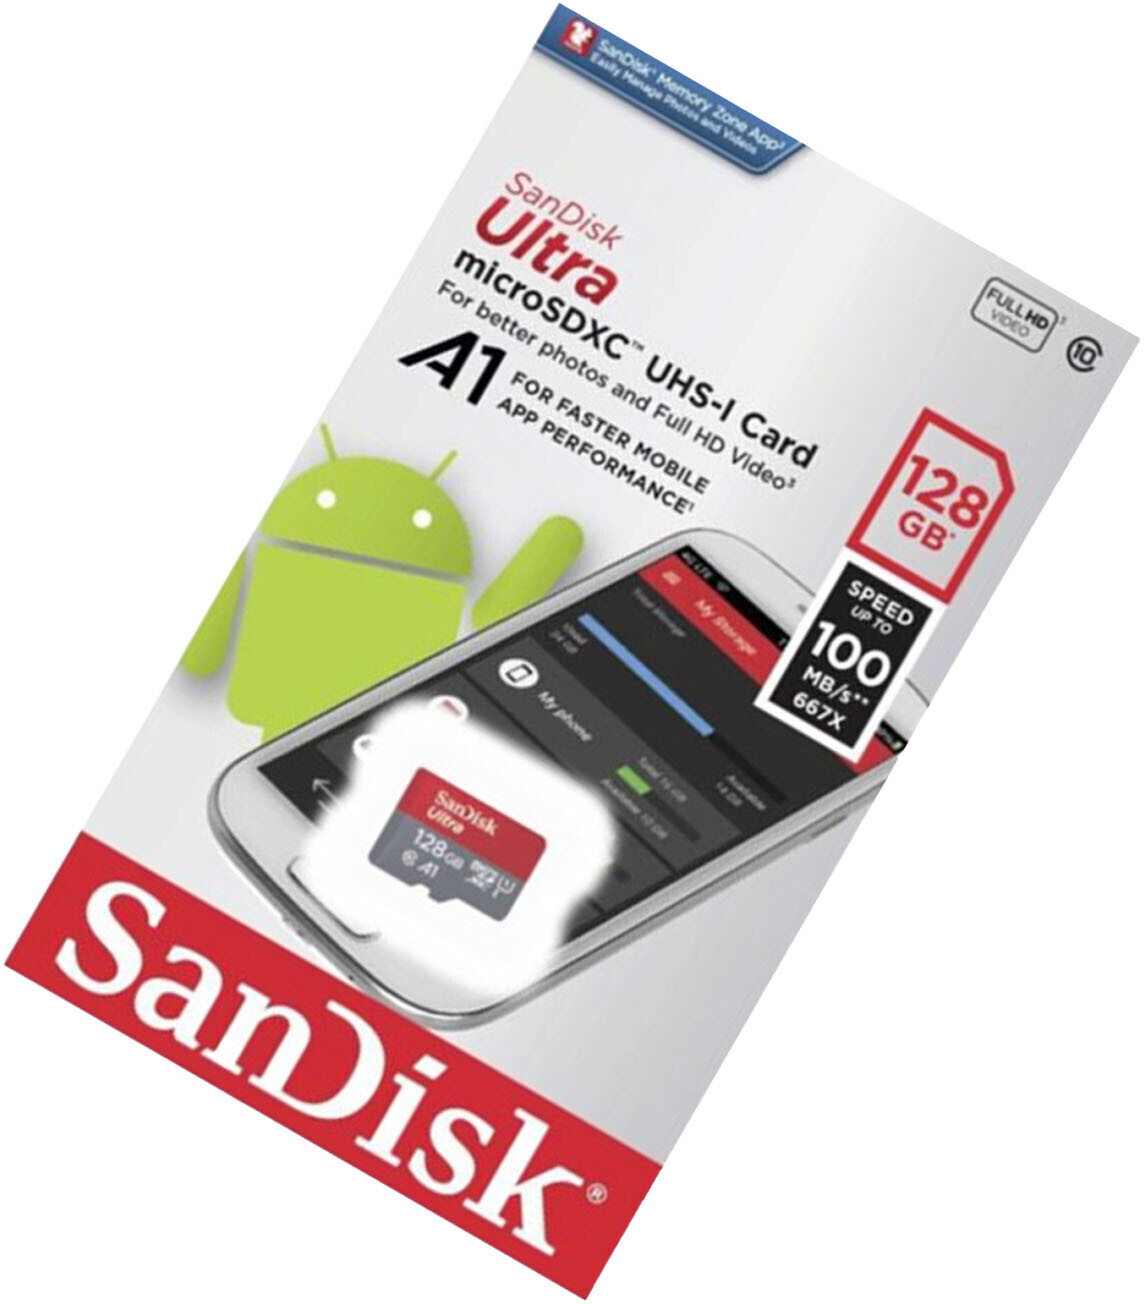 SanDisk Ultra Fit 128 Go : meilleur prix, test et actualités - Les  Numériques